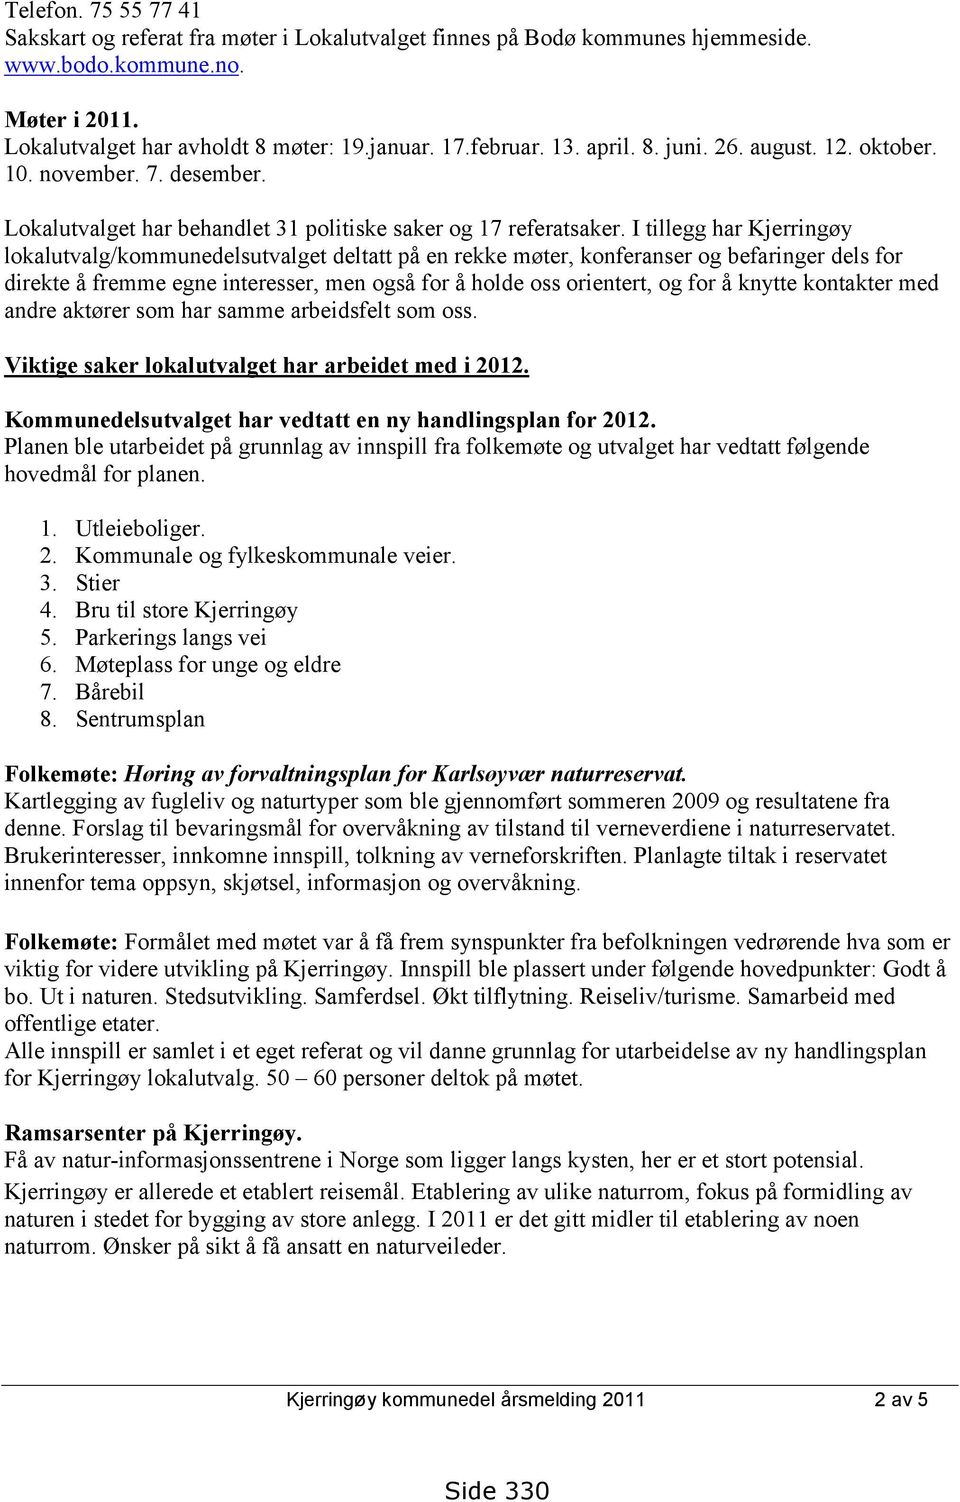 I tillegg har Kjerringøy lokalutvalg/kommunedelsutvalget deltatt på en rekke møter, konferanser og befaringer dels for direkte å fremme egne interesser, men også for å holde oss orientert, og for å